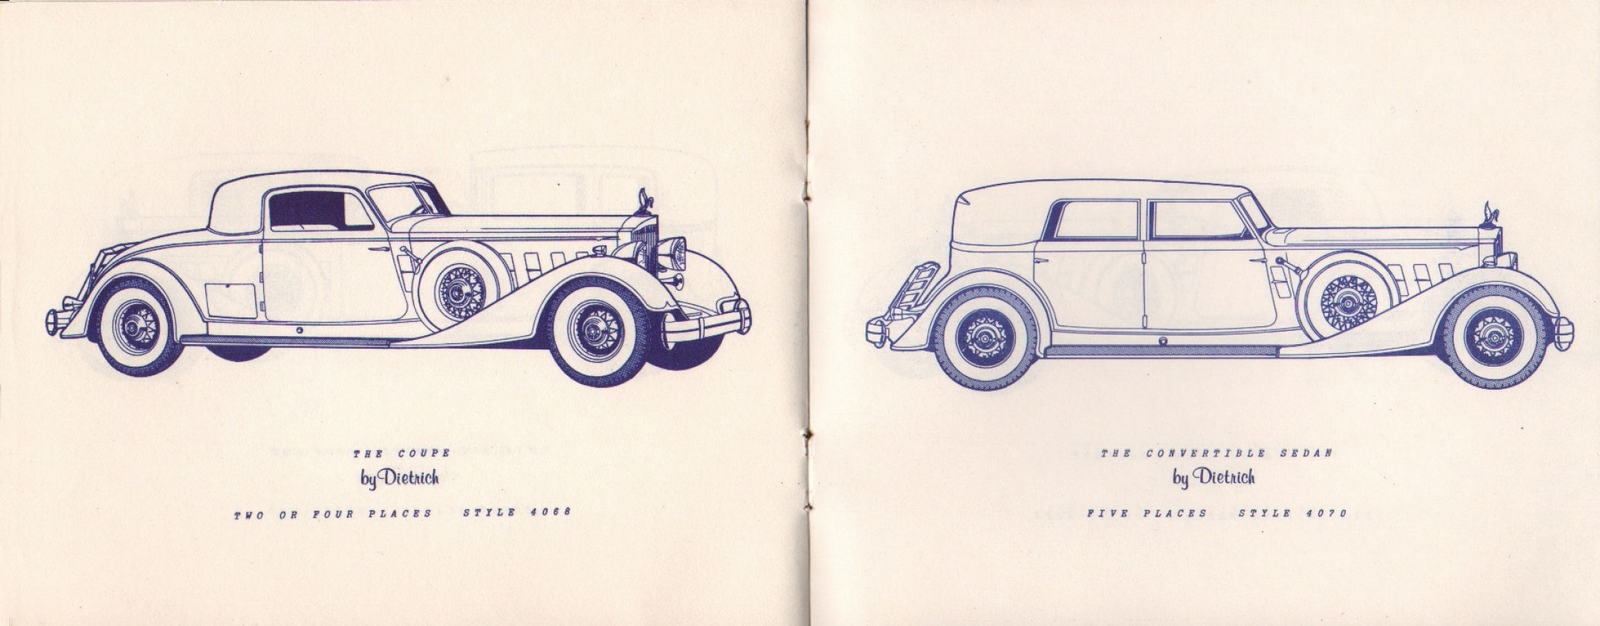 n_1934 Packard Custom Cars Booklet-08-09.jpg